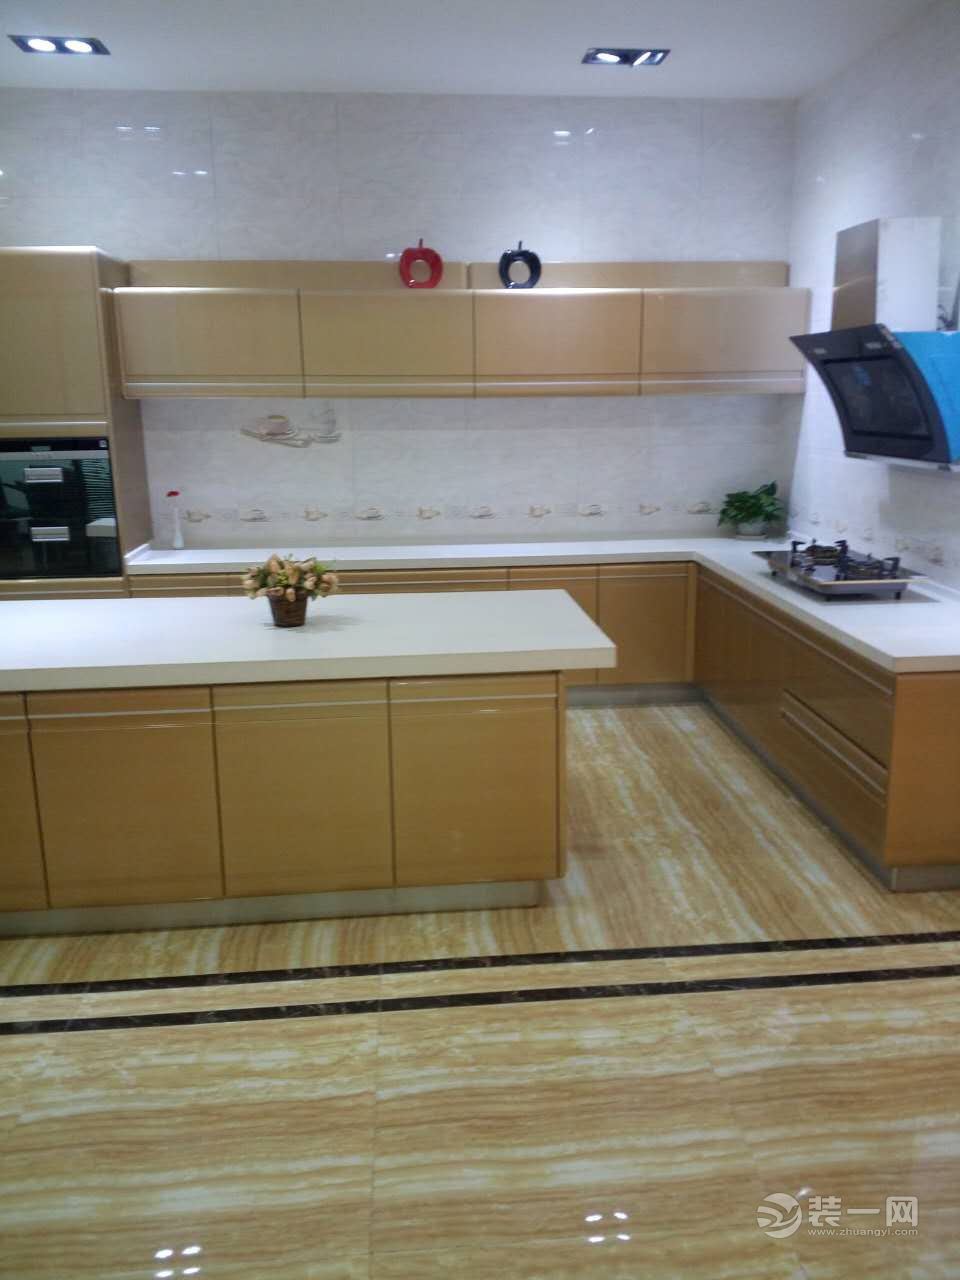 河南紫苹果钻石装饰工程有限公司厨房样板间